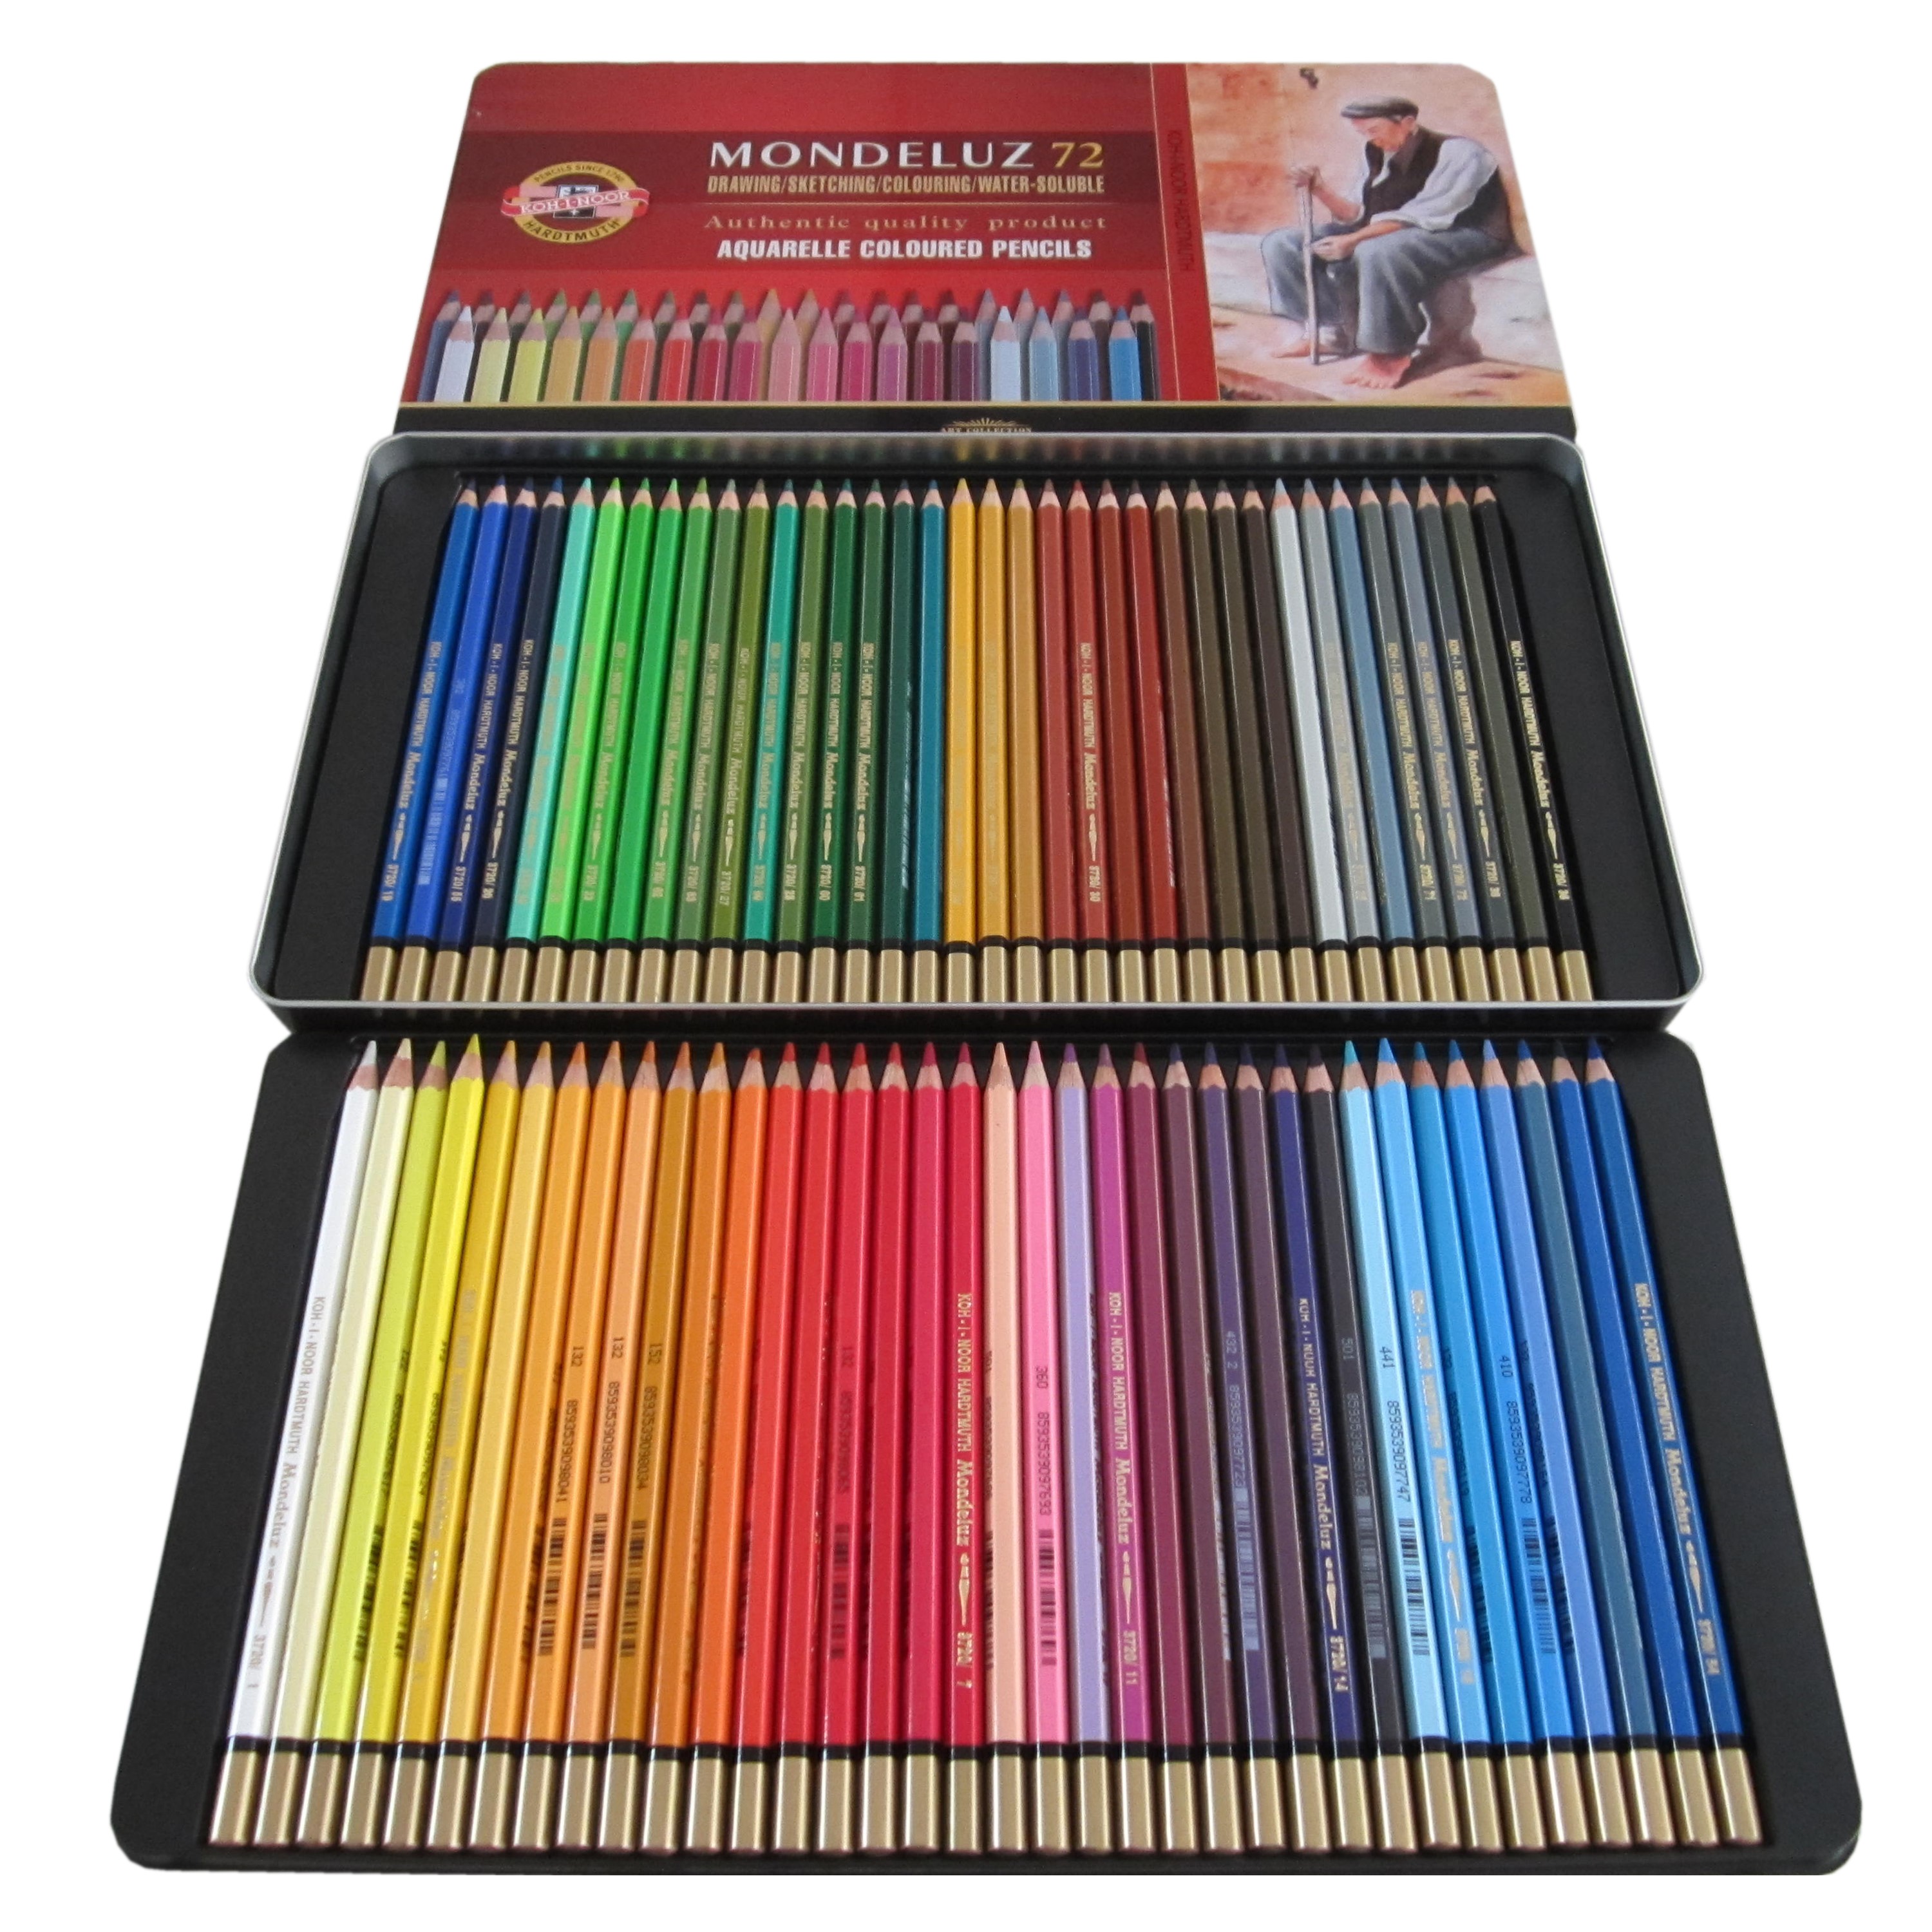 72 Aquarell Buntstifte Set Buntstifte Brillanten Farben Bleistifte Zeichnen 